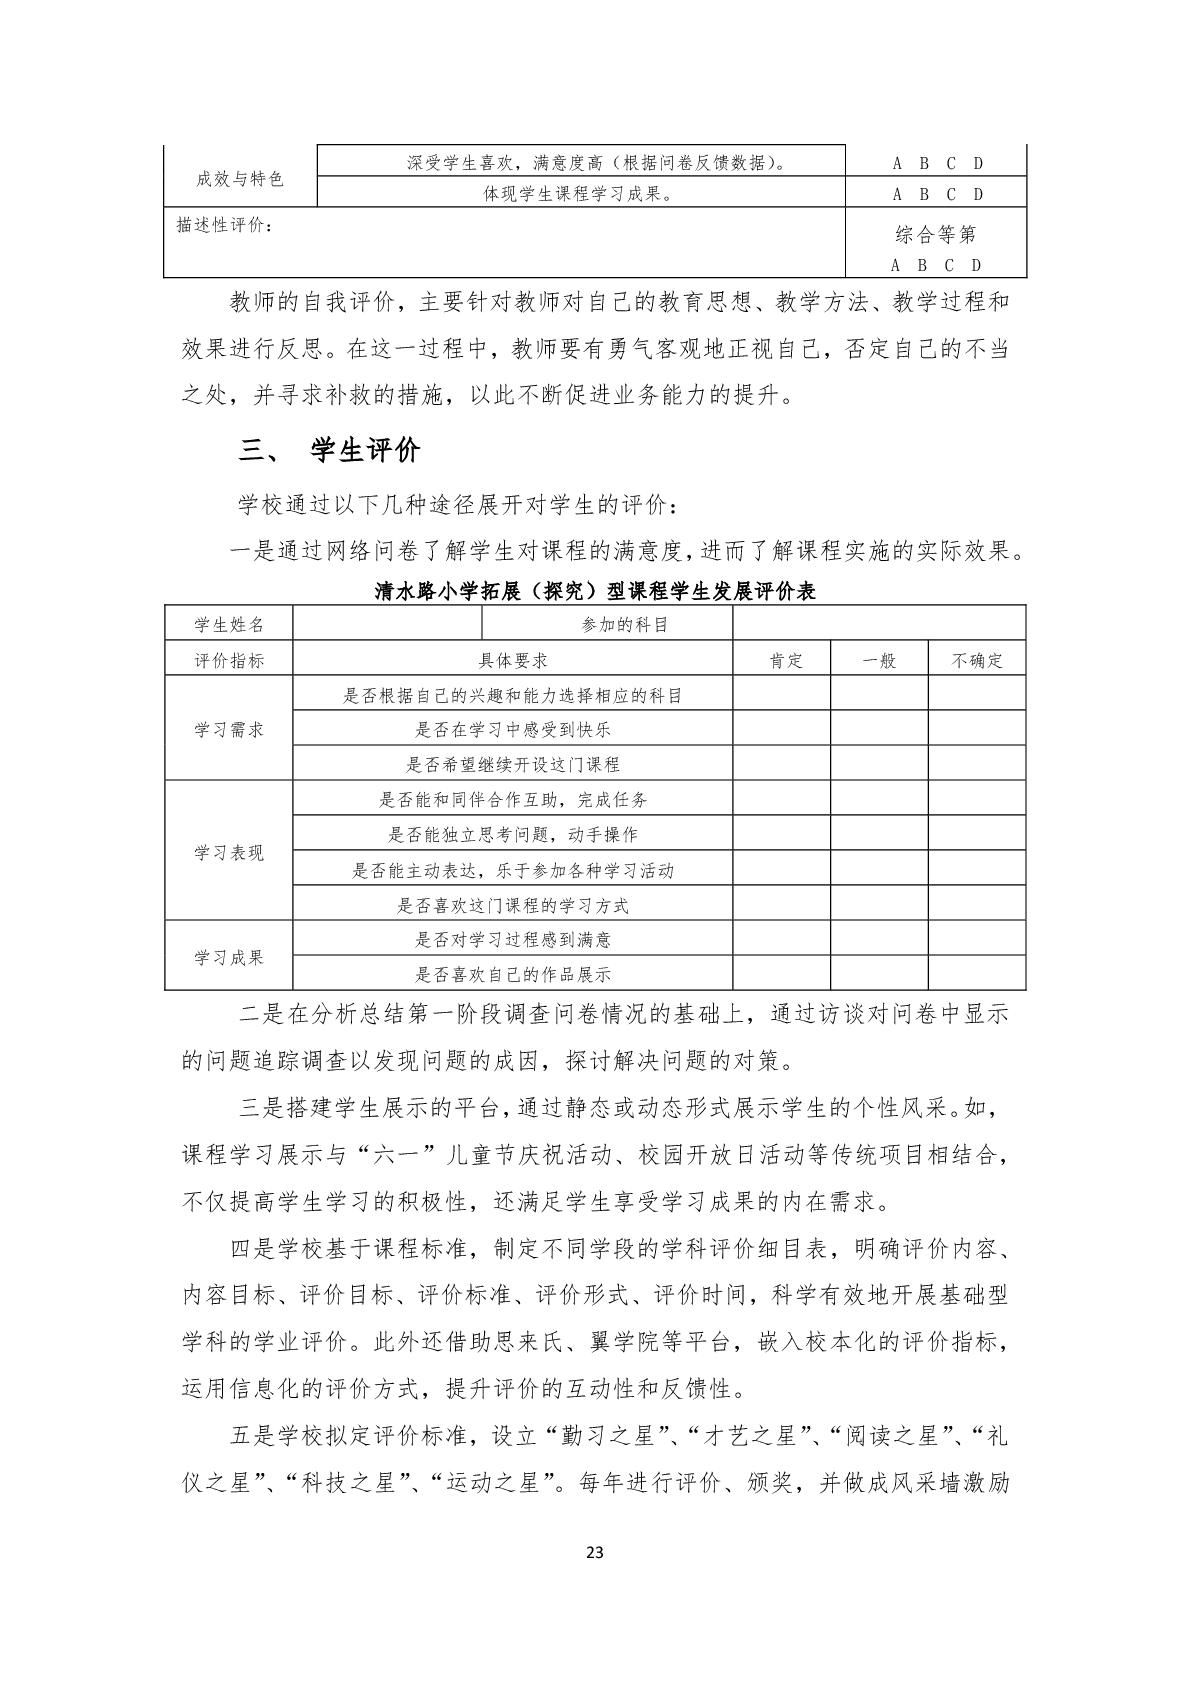 2.上海市嘉定区清水路小学2020学年度课程计划-023.jpg